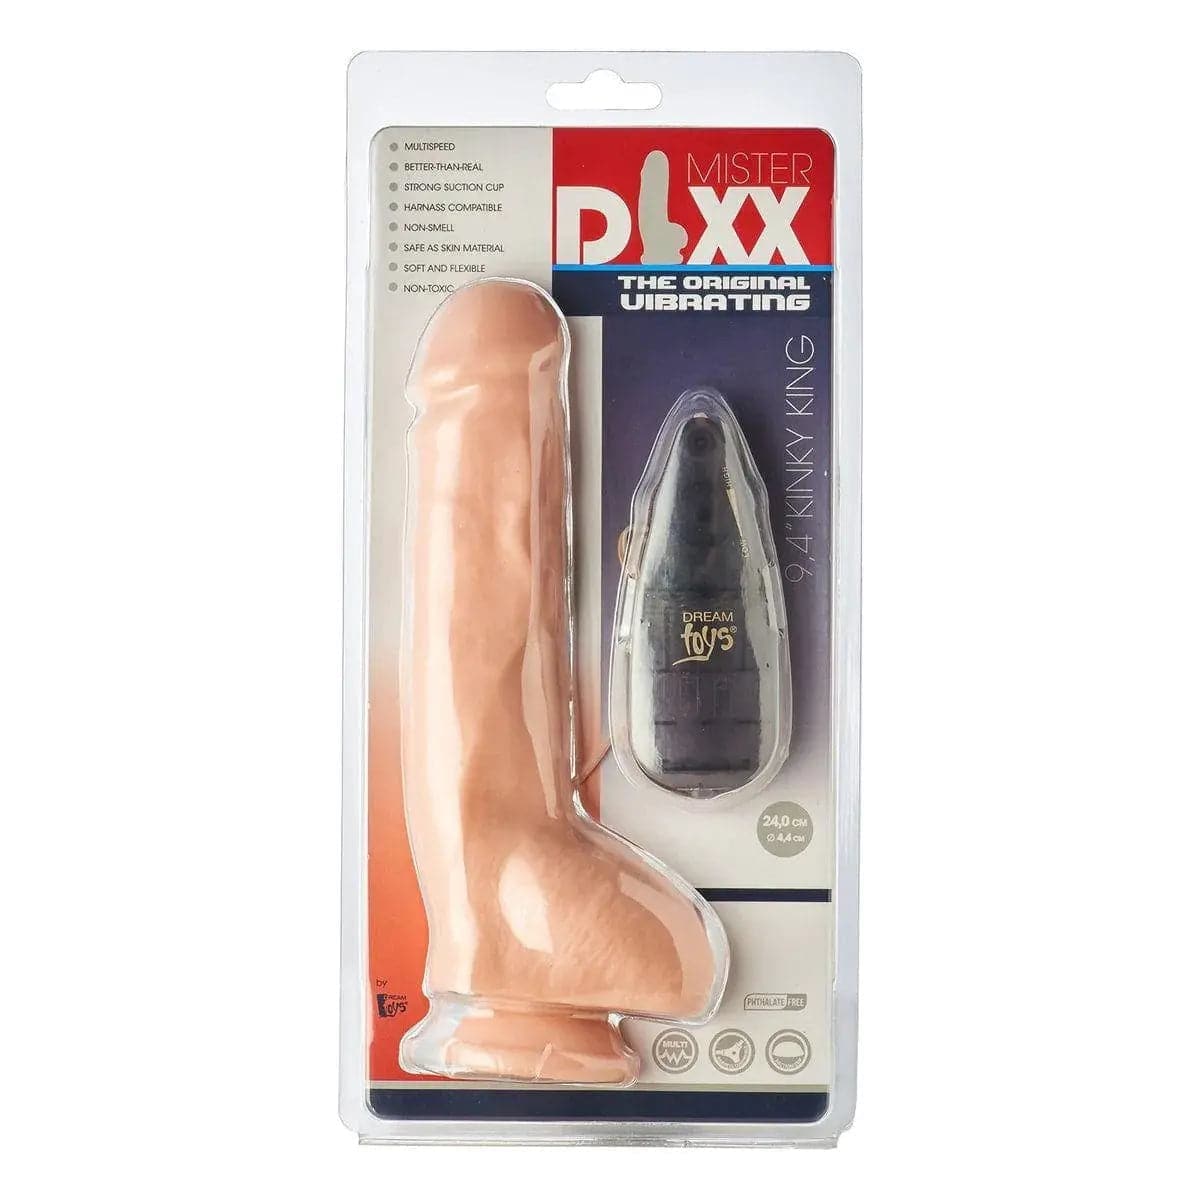 Mr.DIXX Vibrador Realista Kinky King, 23.5cm Ø4.4cm, vibração regulável  Mr.DIXX   